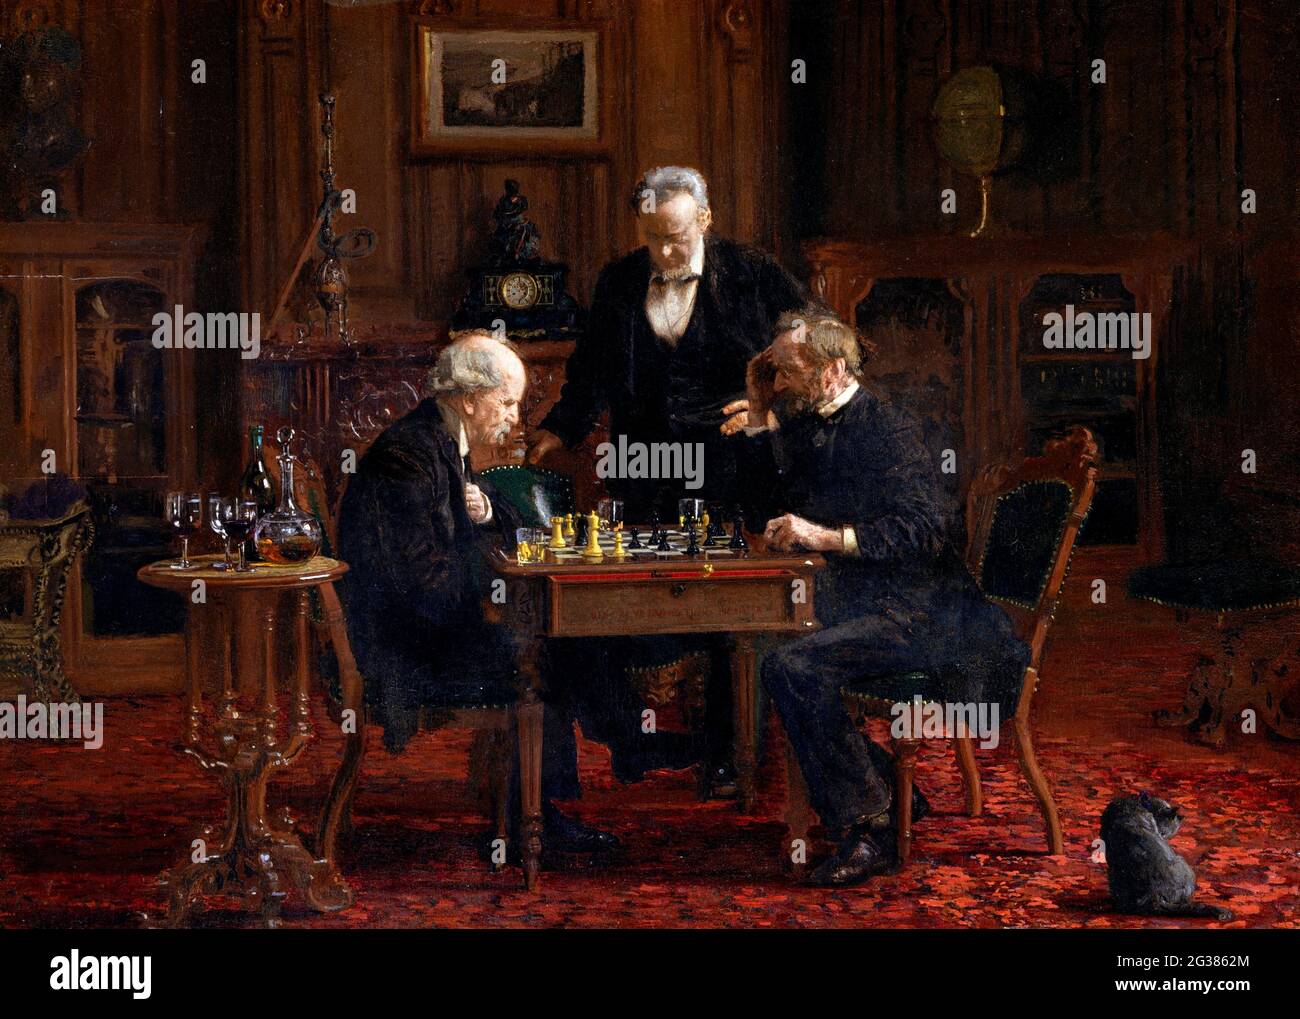 The Chess Players par Thomas Eakins (1844-1916), huile sur bois, 1876 Banque D'Images